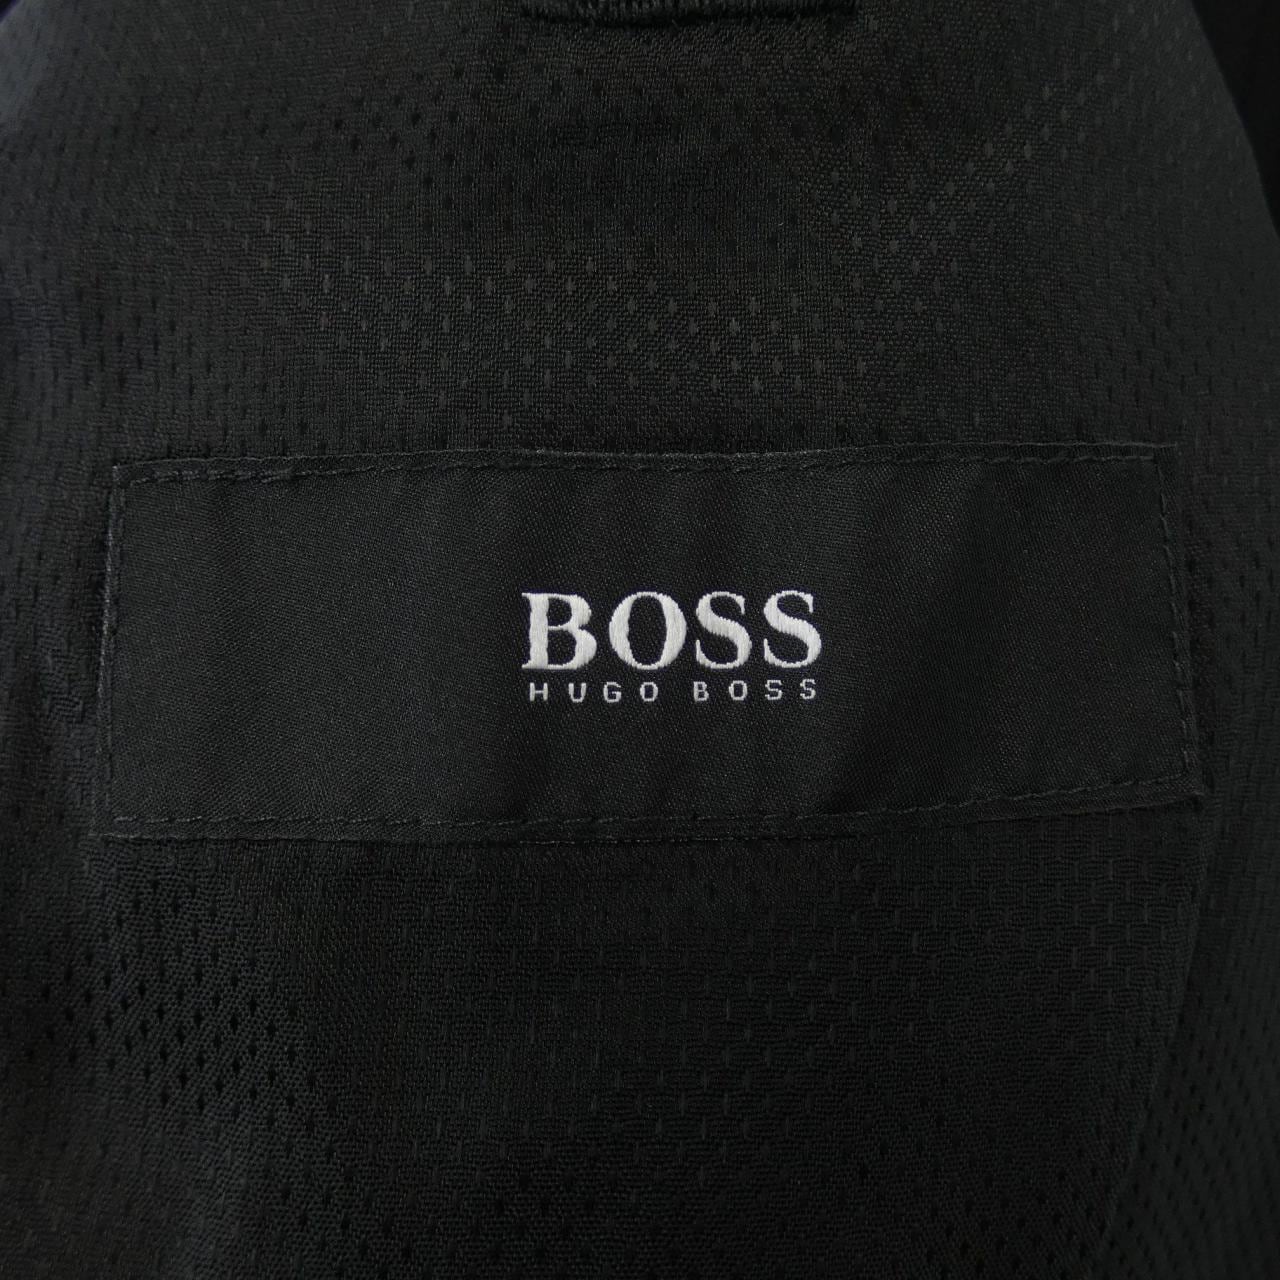 Hugo Boss HUGO BOSS suit